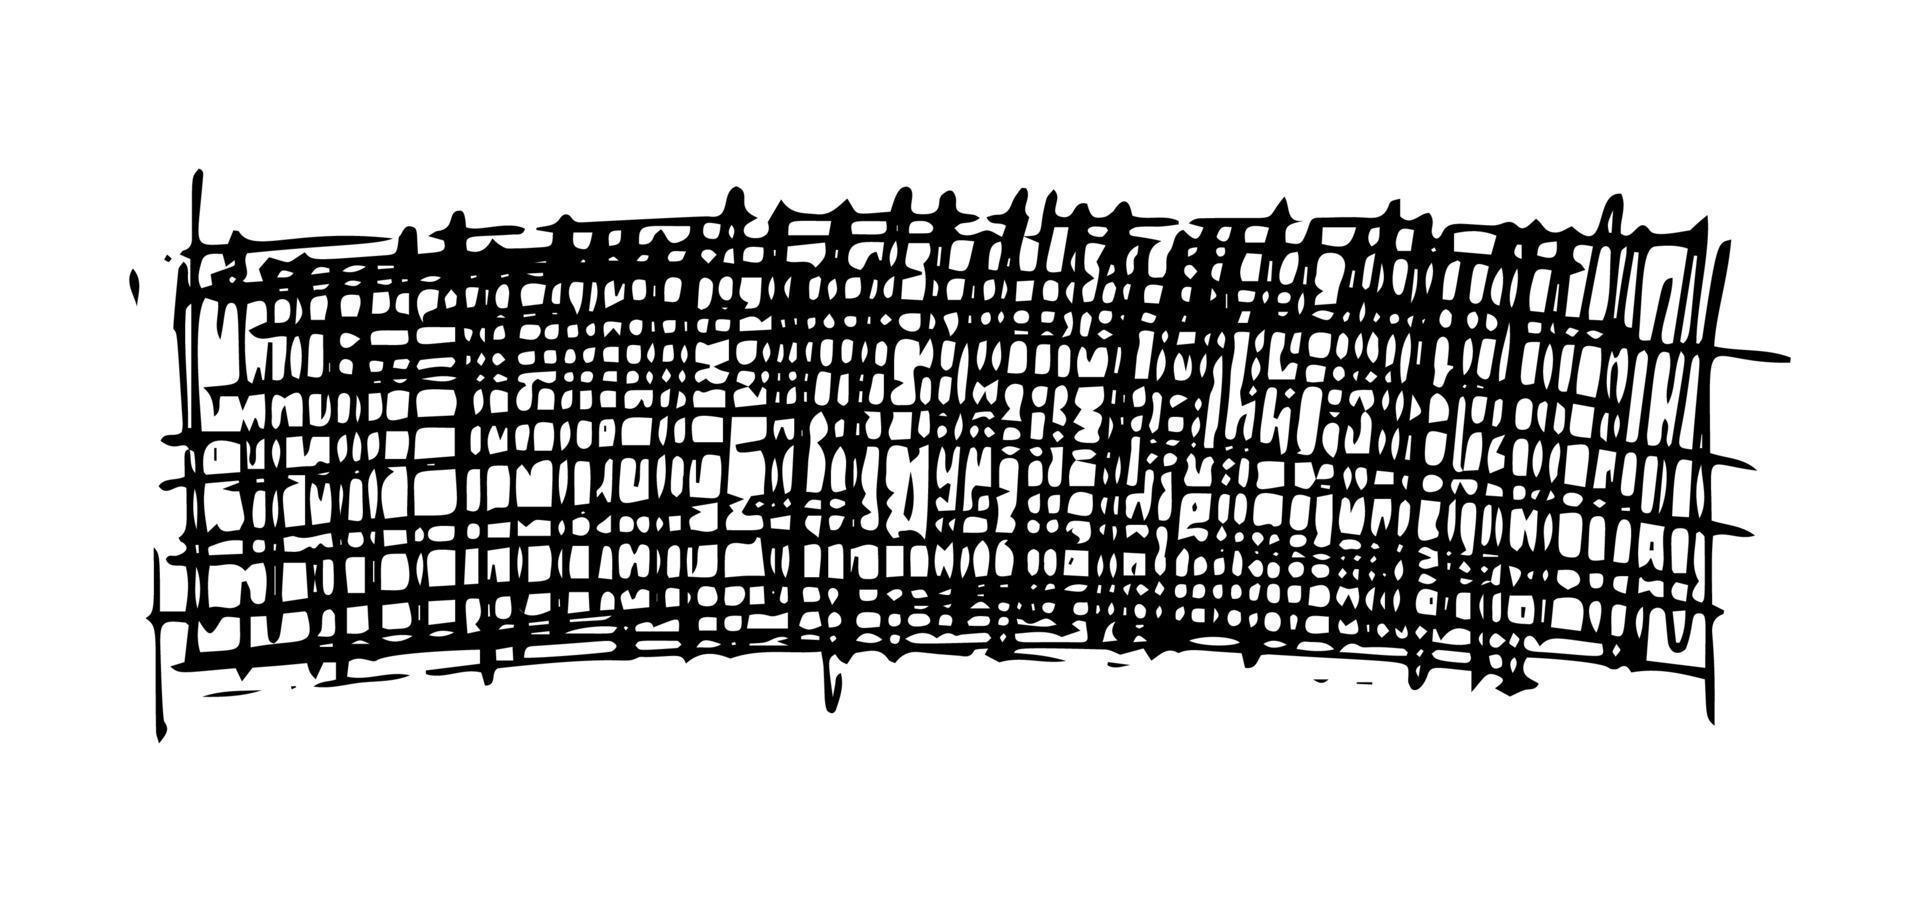 Skizze kritzeln Abstrich. schwarze Bleistiftzeichnung in Form eines Rechtecks auf weißem Hintergrund. tolles Design für jeden Zweck. Vektor-Illustration. vektor